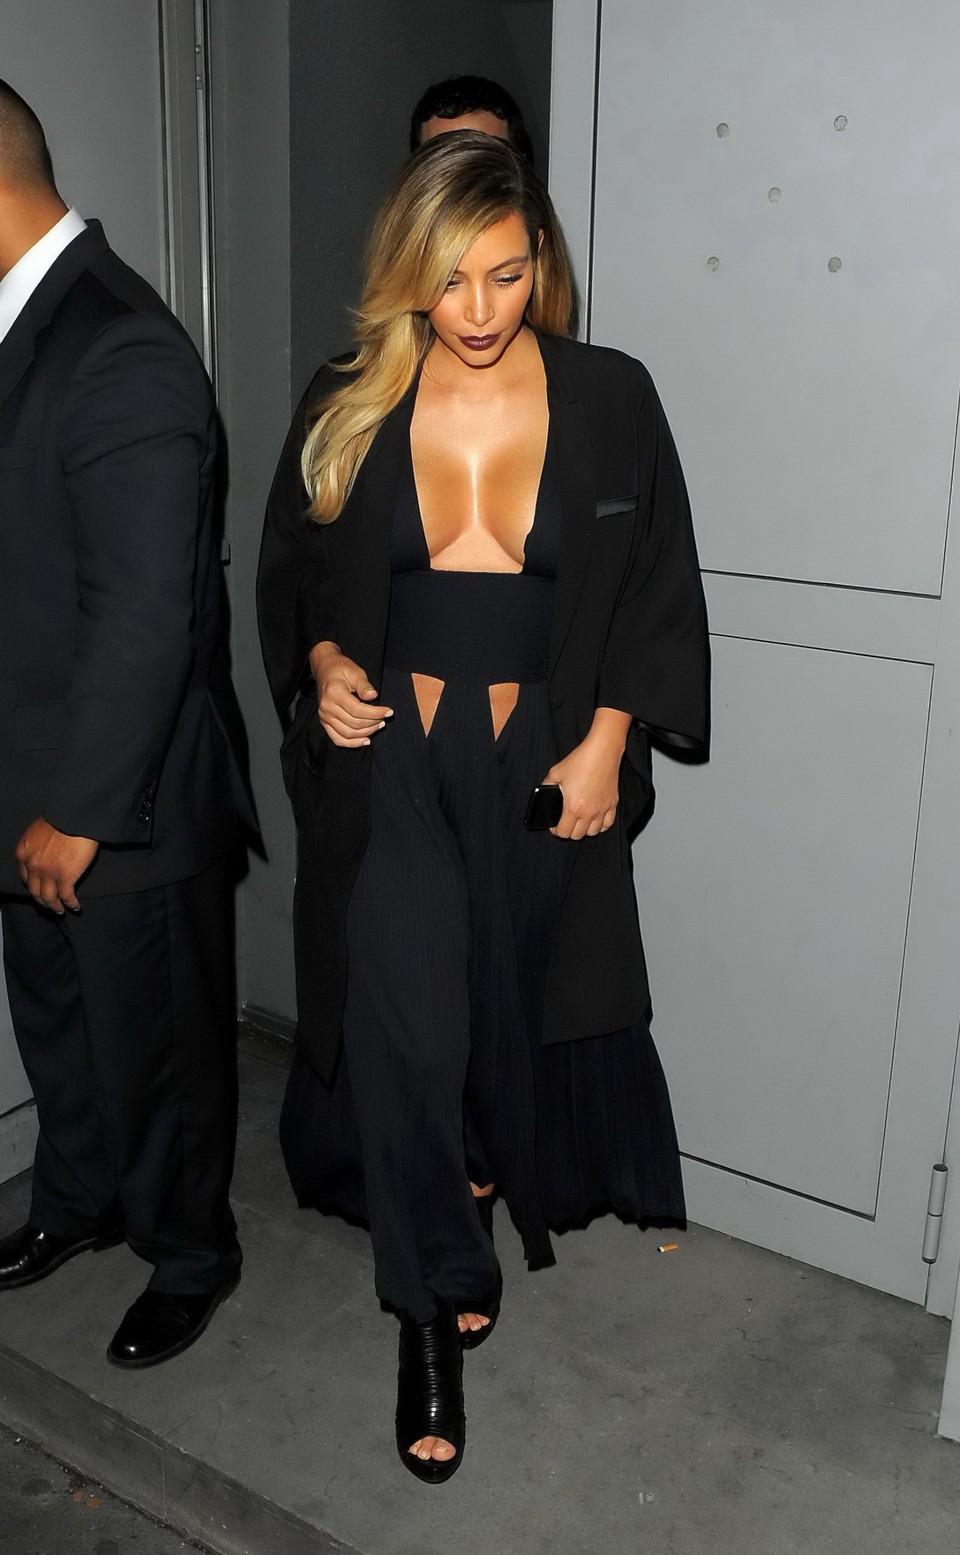 Busty Kim Kardashian